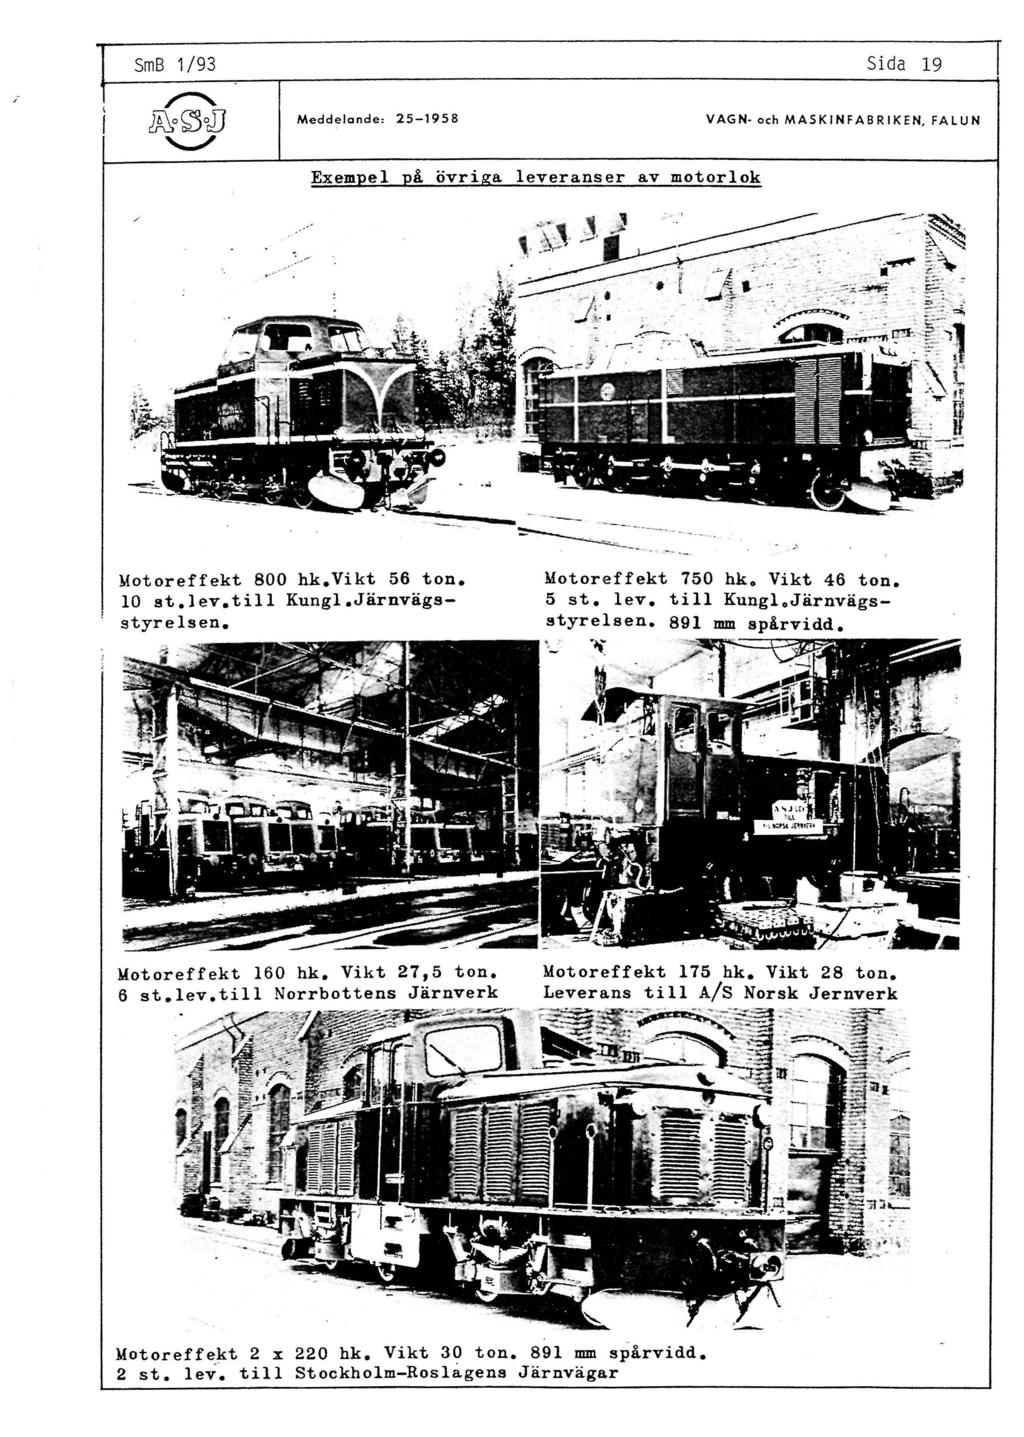 SmB 1/93 Sida 19 Meddelande: 25-1958 VAGN- och MASKJNFABRIKEN, FALUN Exempel på övriga leveranser av motorlok Motoreffekt 800 hk.vikt 56 ton. lo st.lev.till Kungl.Järnvägsstyrelsen.